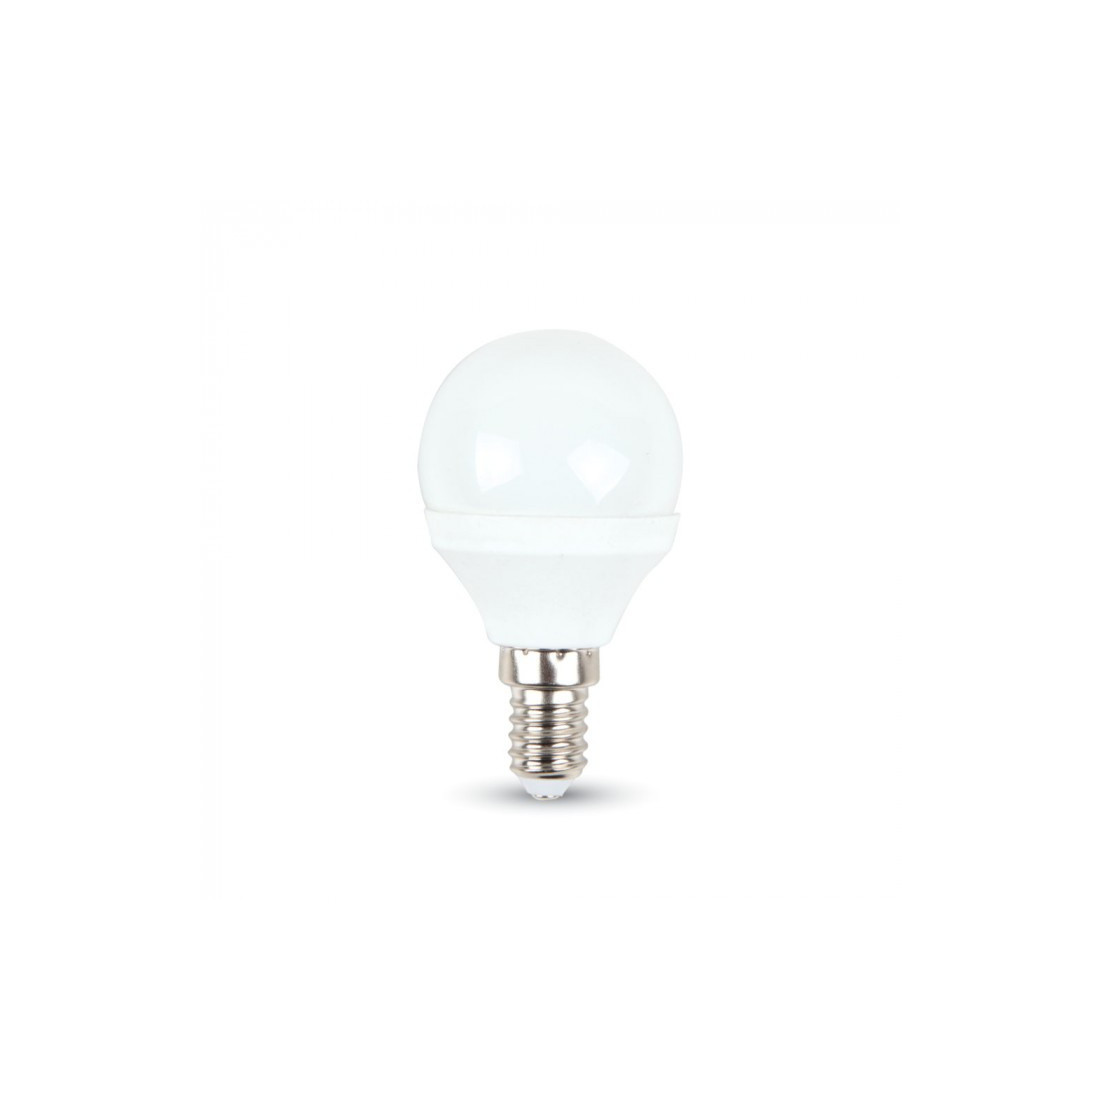 Лампа светодиодная bellight. Лампа ideal Lux g9 led 3.2 Вт 3000k.